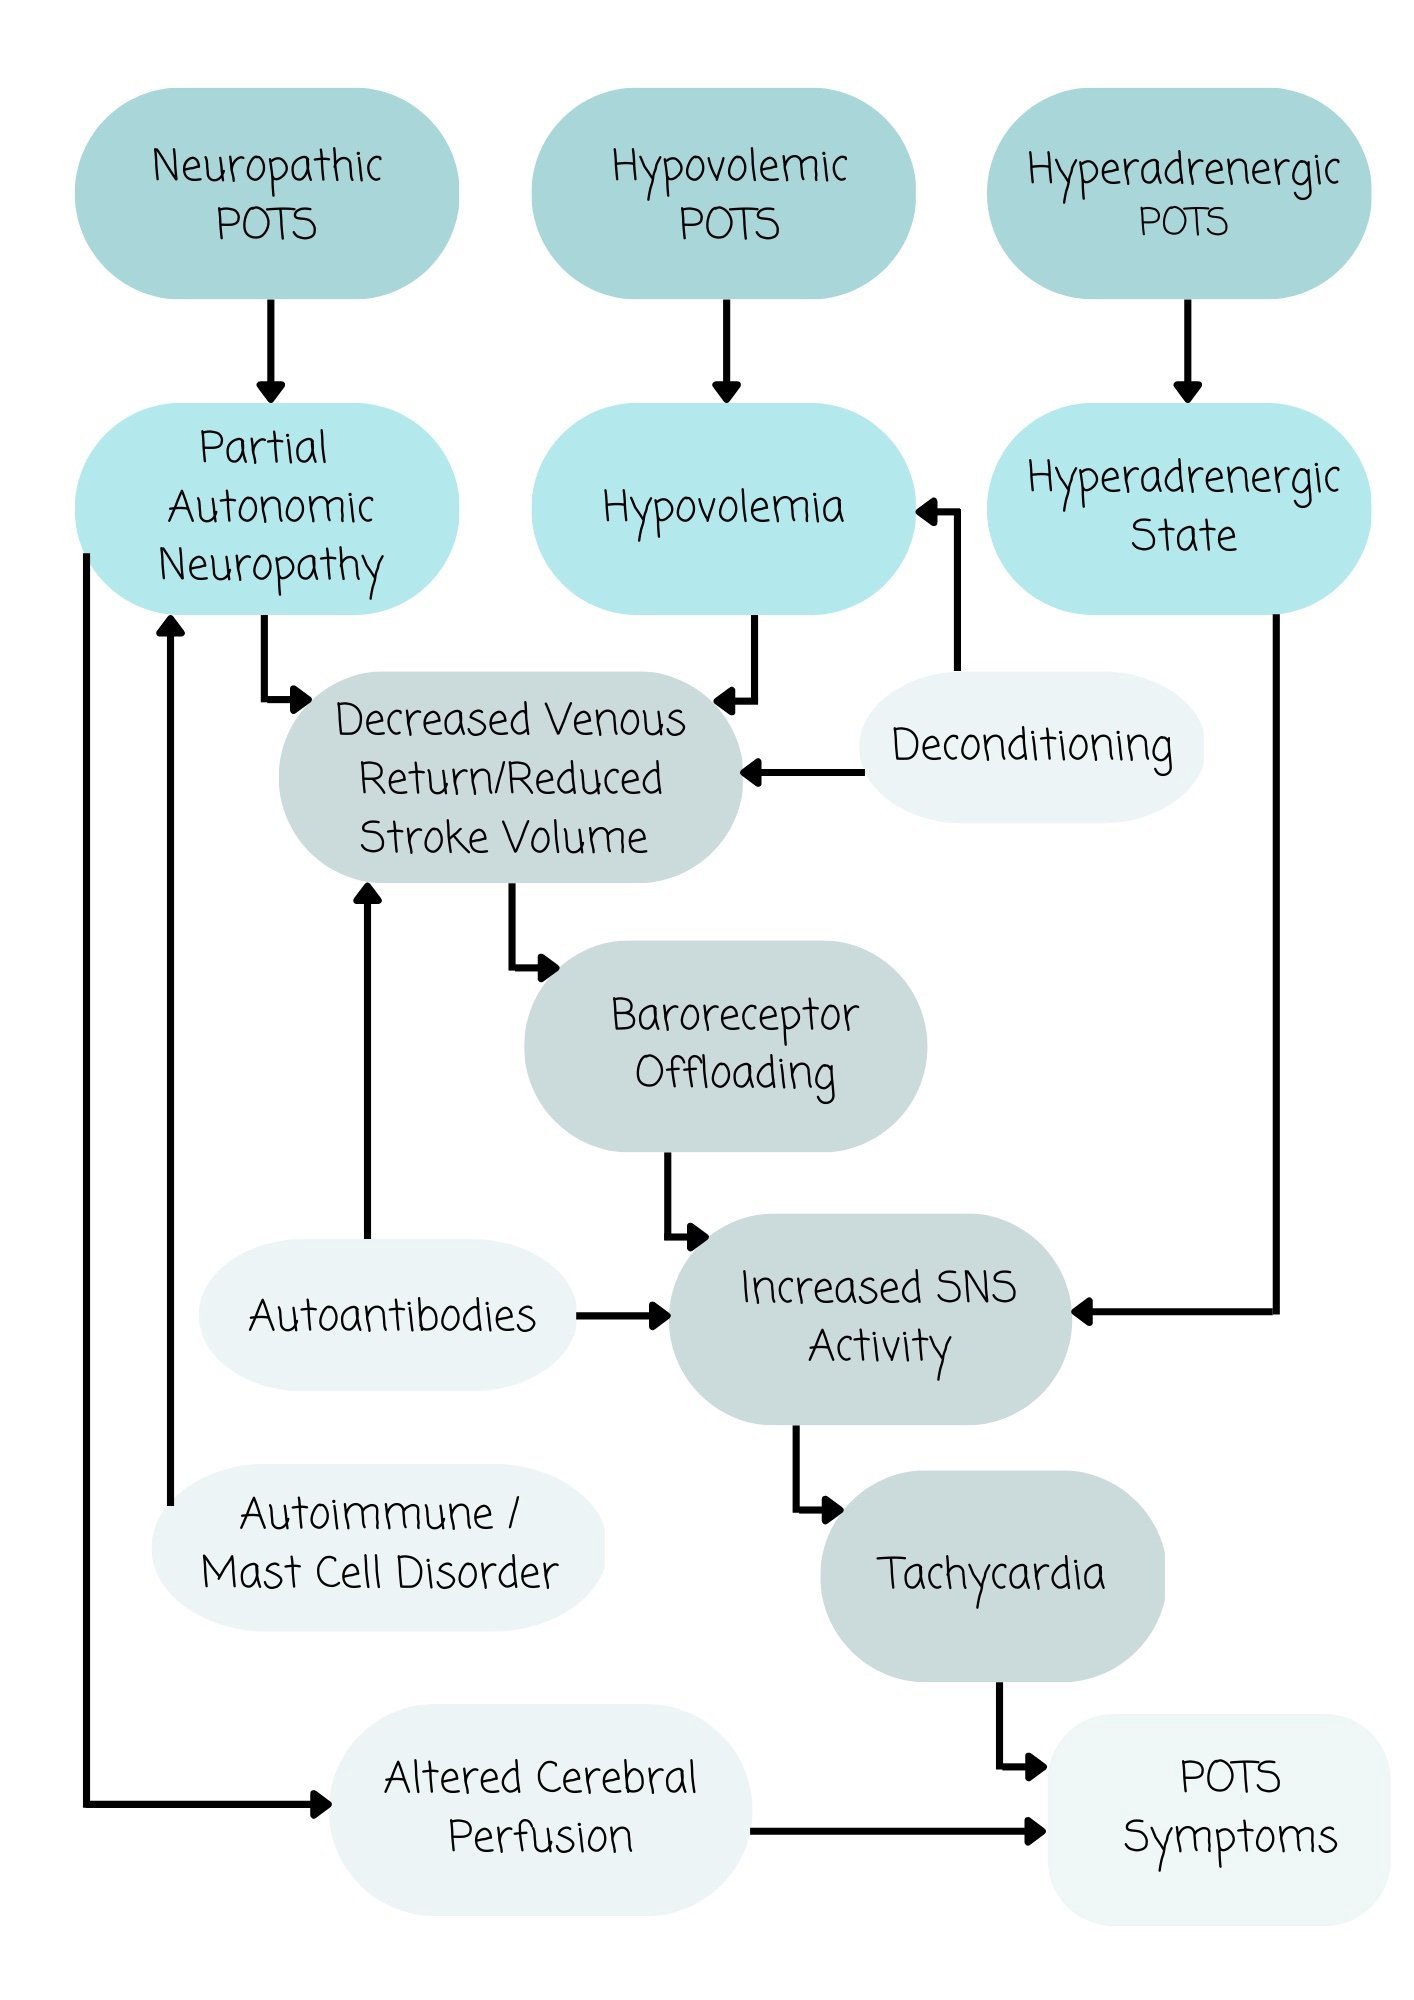 POTS pathophysiological subtypes